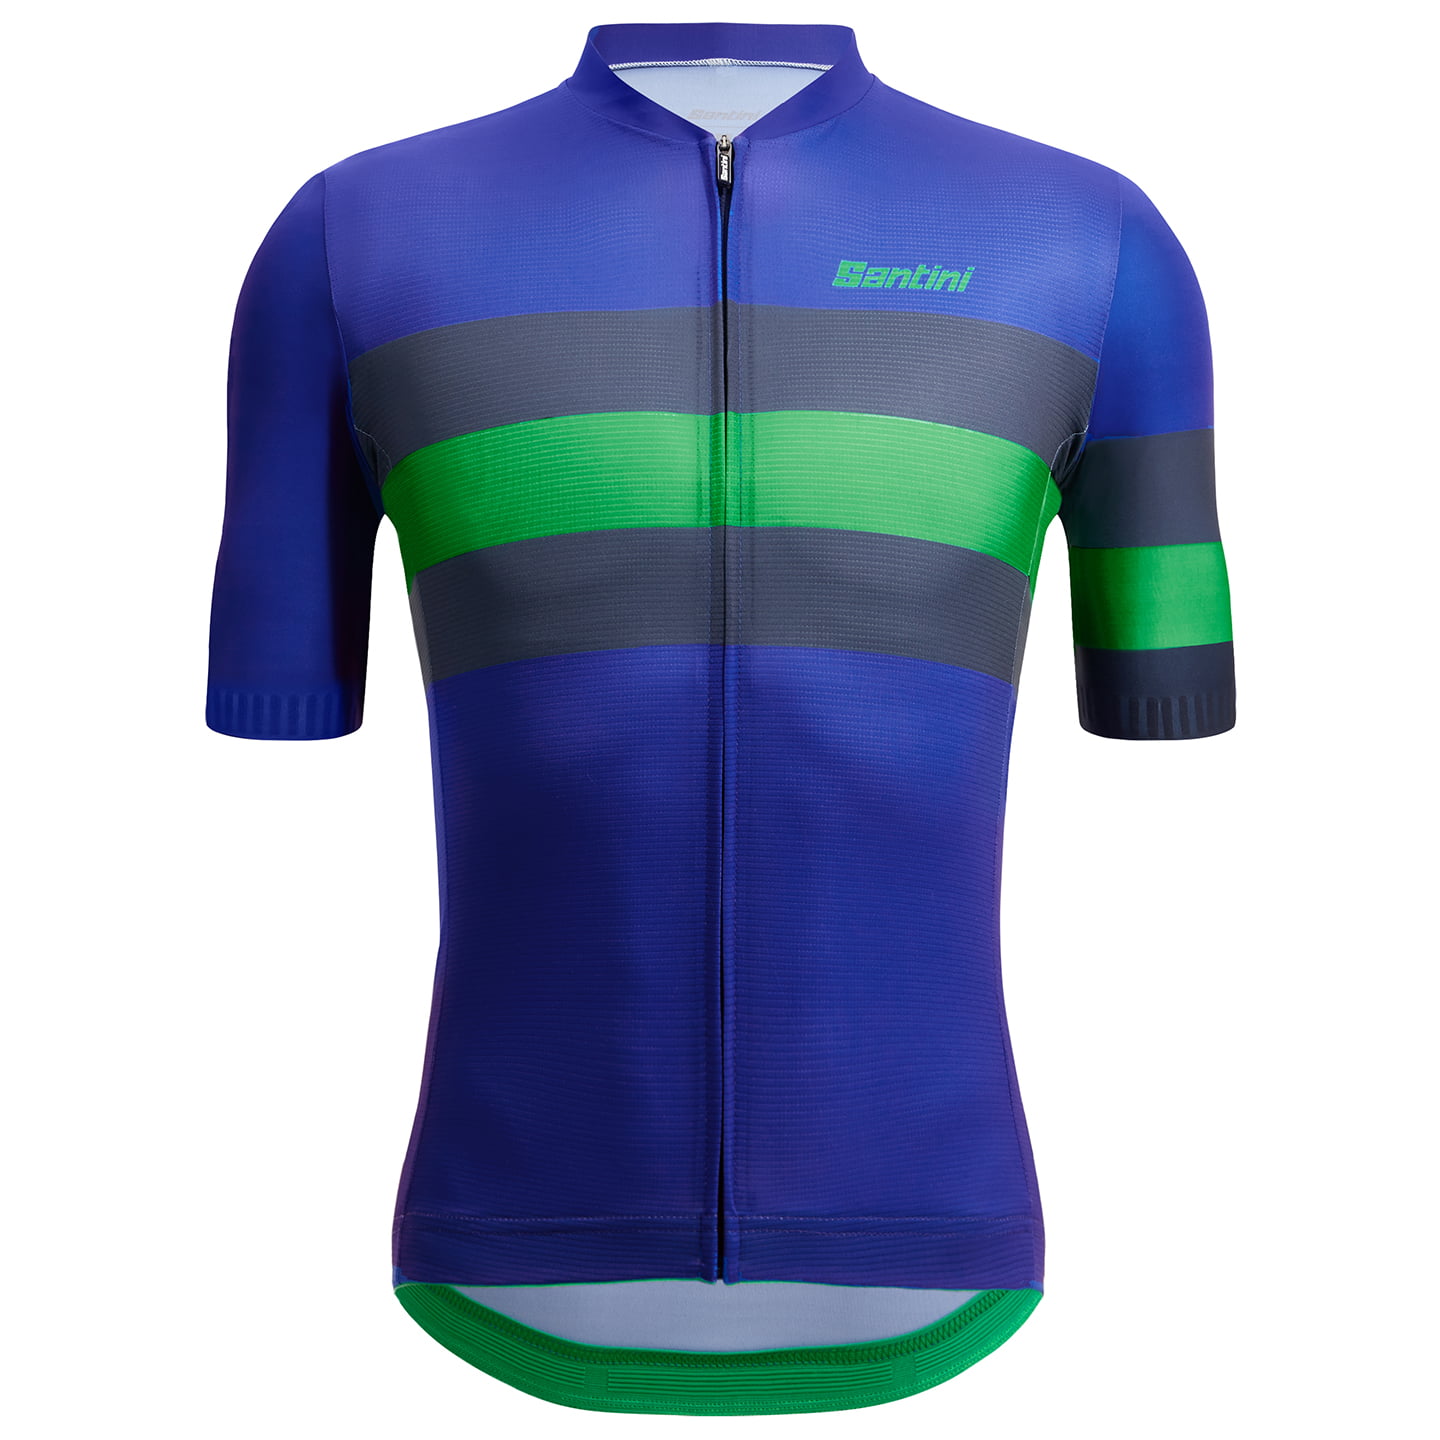 SANTINI Eco Sleek Bengal Short Sleeve Jersey Short Sleeve Jersey, for men, size M, Cycling jersey, Cycling clothing